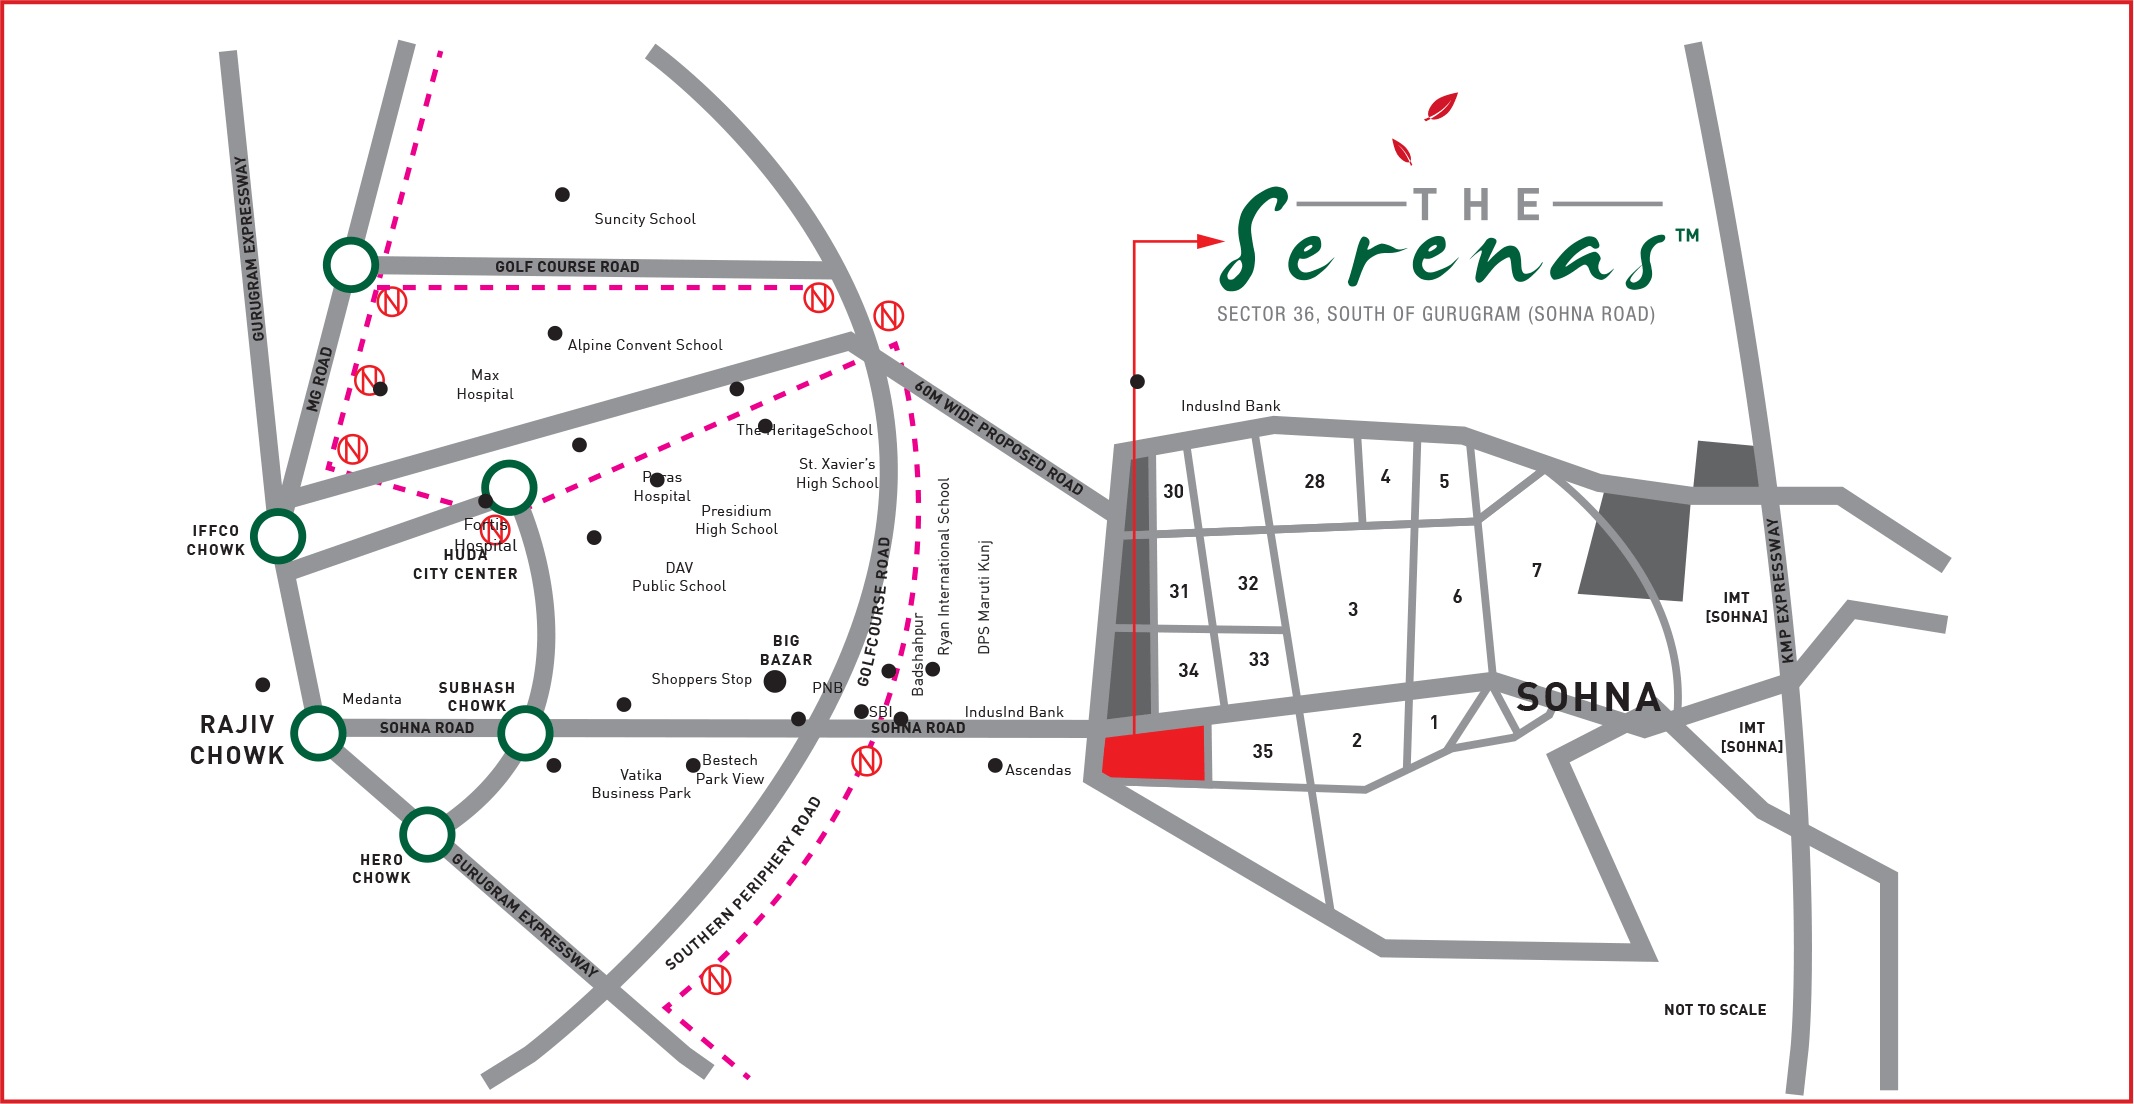 Signature The Serenas Location Map